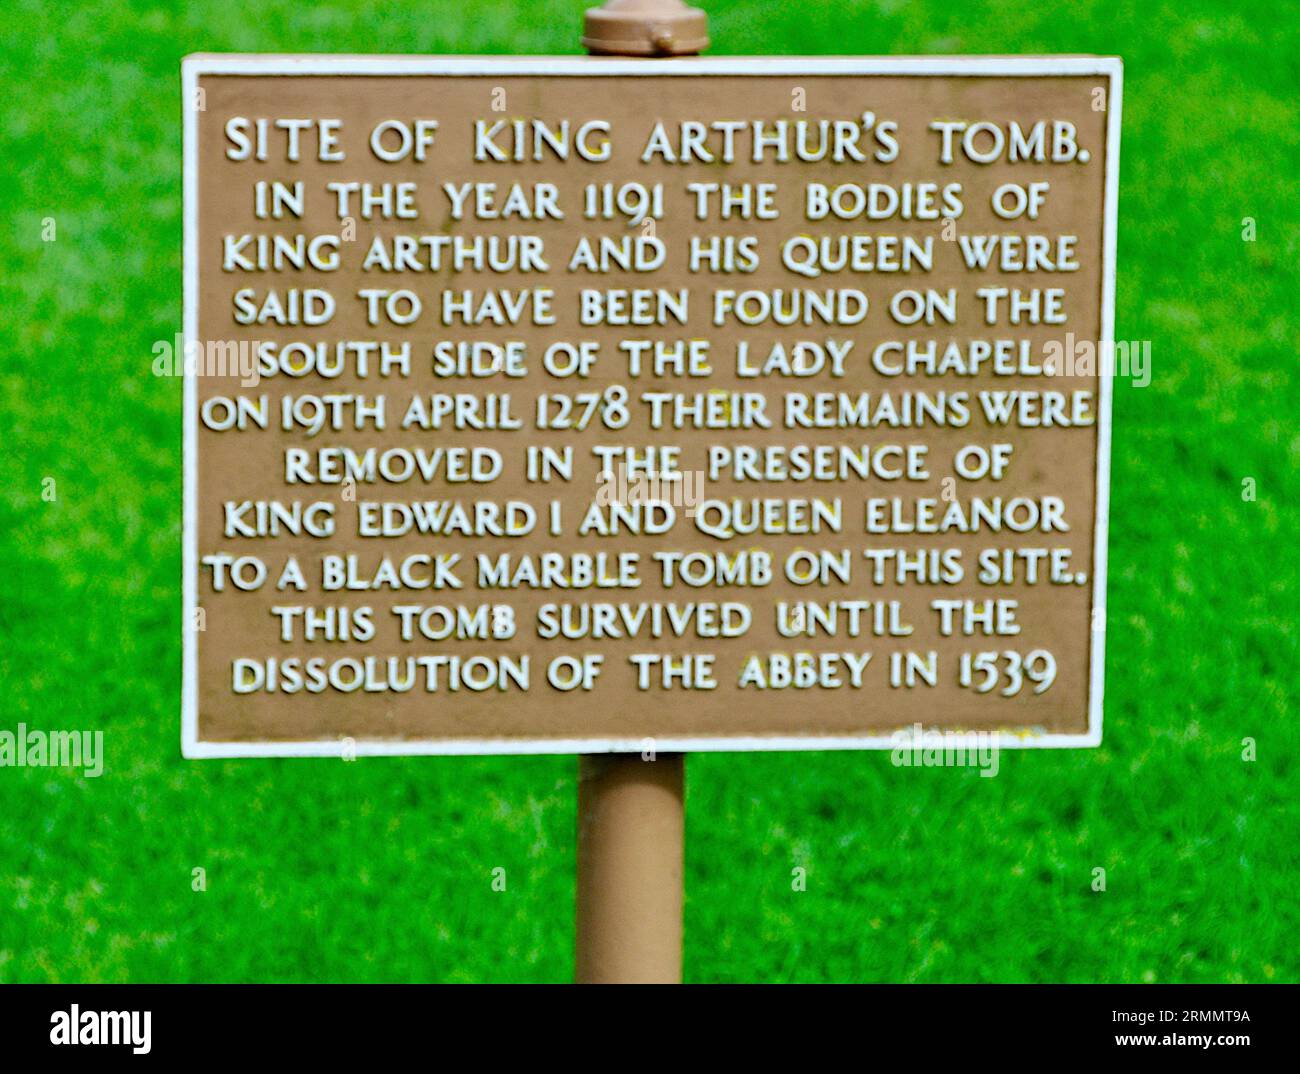 Qui si trova Artù il Re una volta e futuro - sito della Tomba di Re Artù - Abbazia di Glastonbury Foto Stock